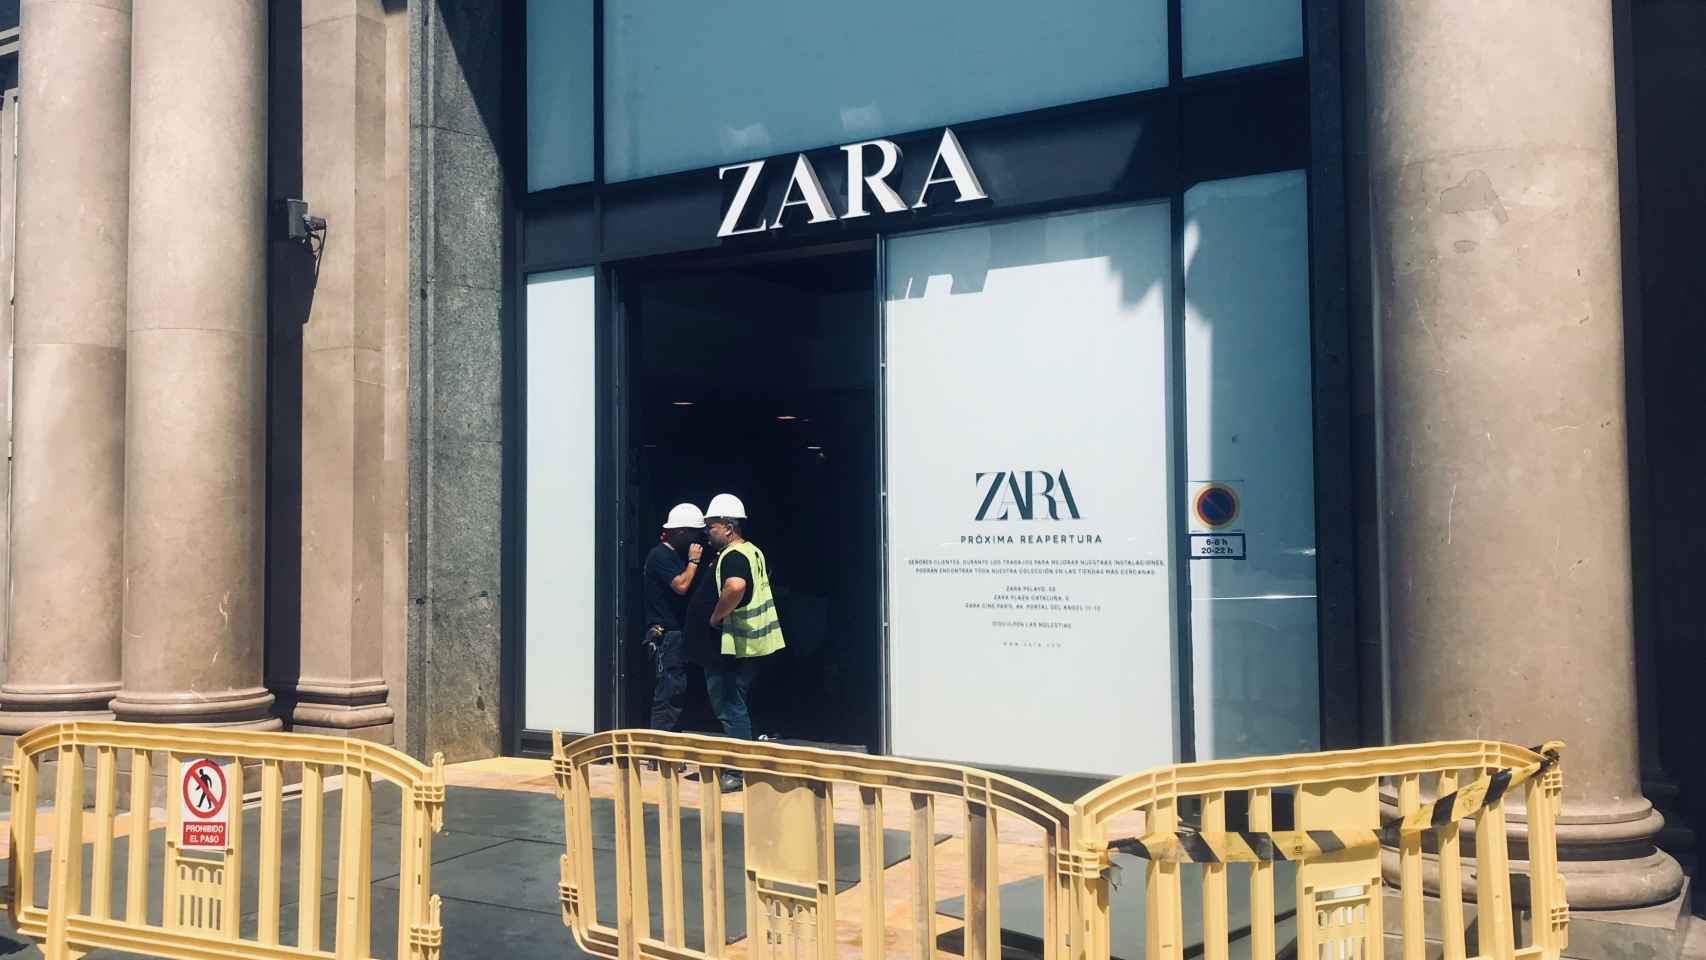 La tienda de Zara, ubicada en Passeig de Gràcia, tendrá una superficie de 4.000 metros cuadrados / SC